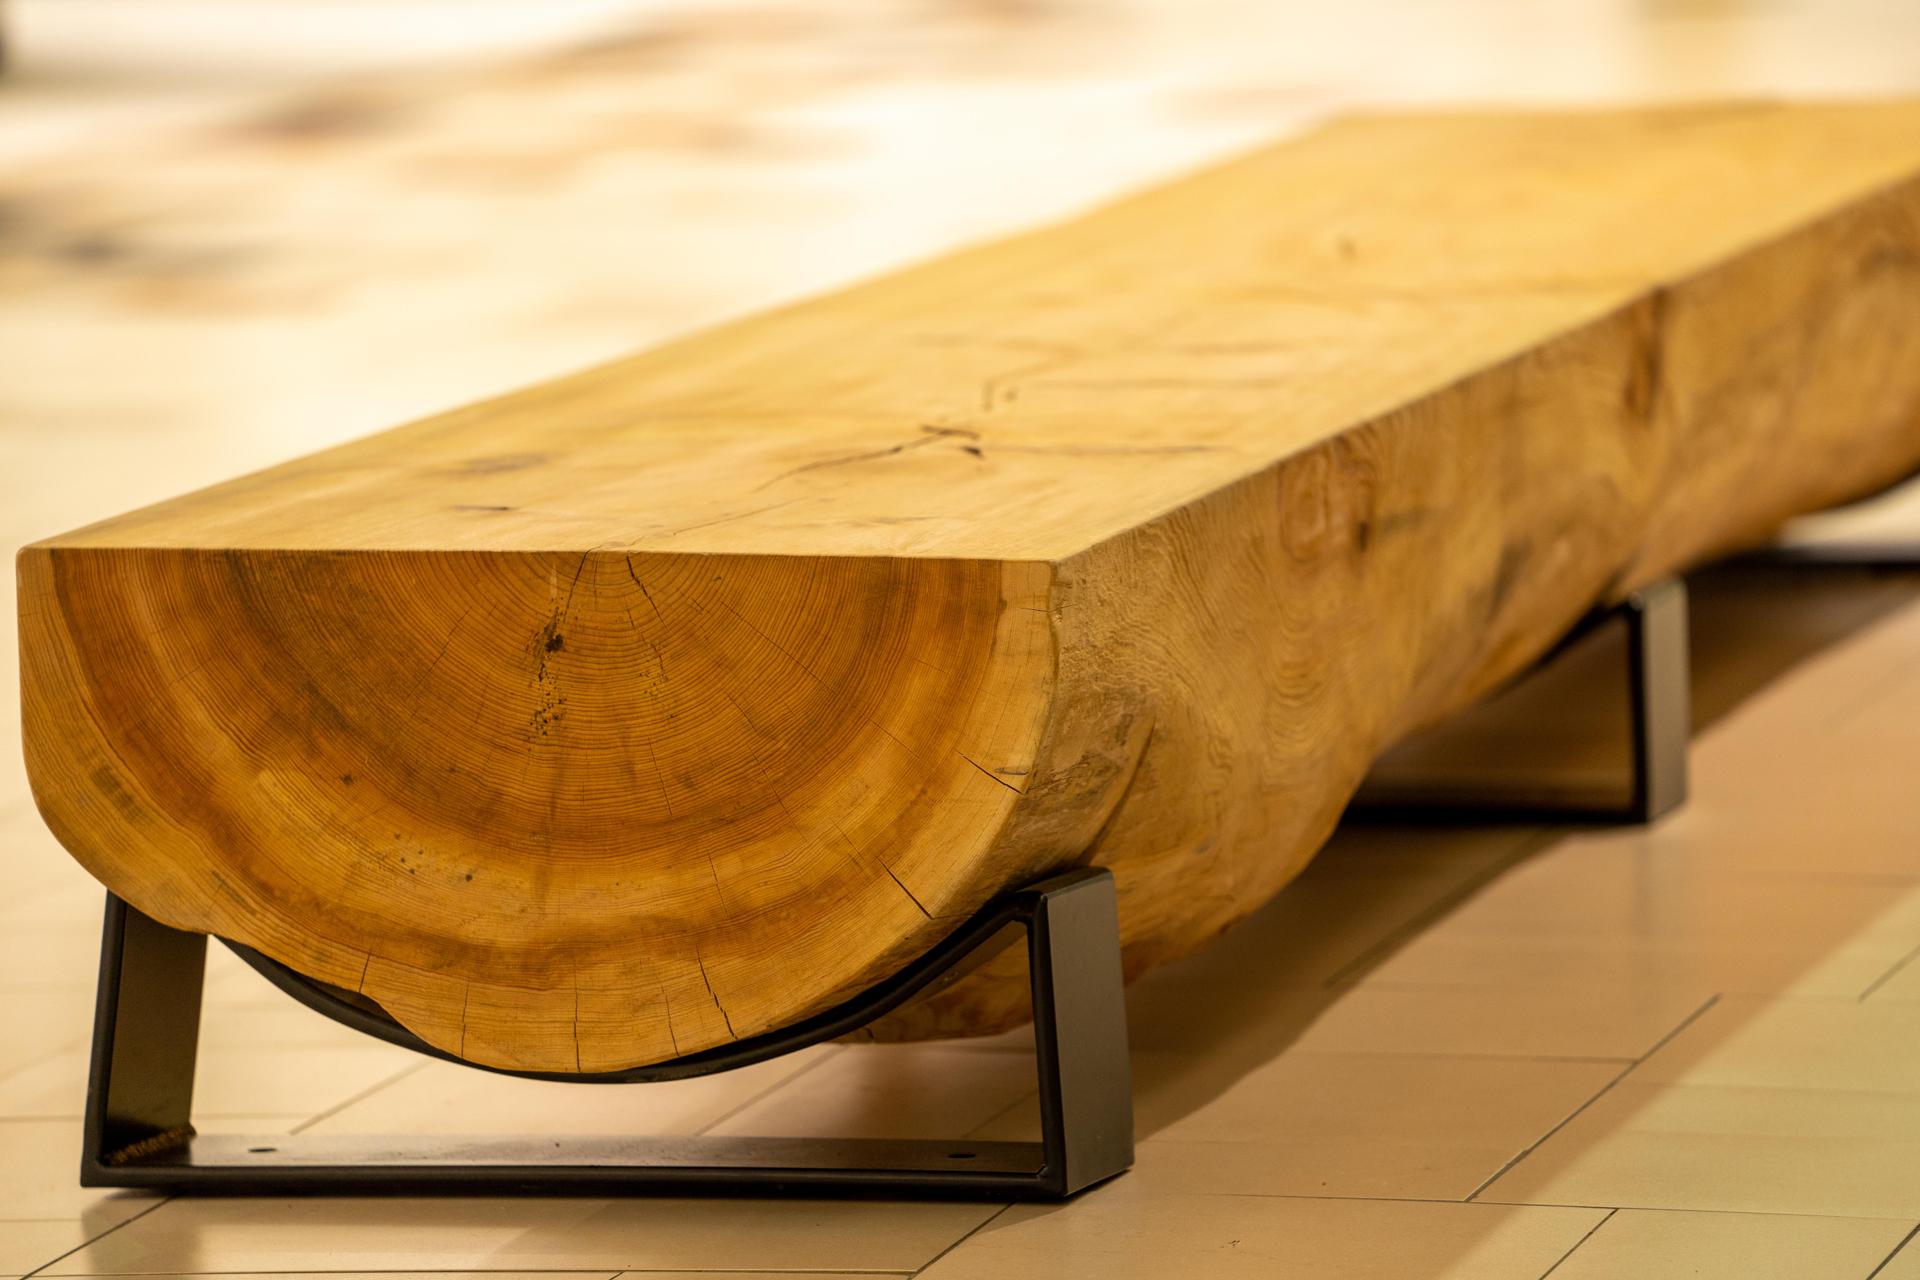 Projet de création sur-mesure de bancs en troncs d'arbres dans le centre commercial Bel Air à Rambouillet.